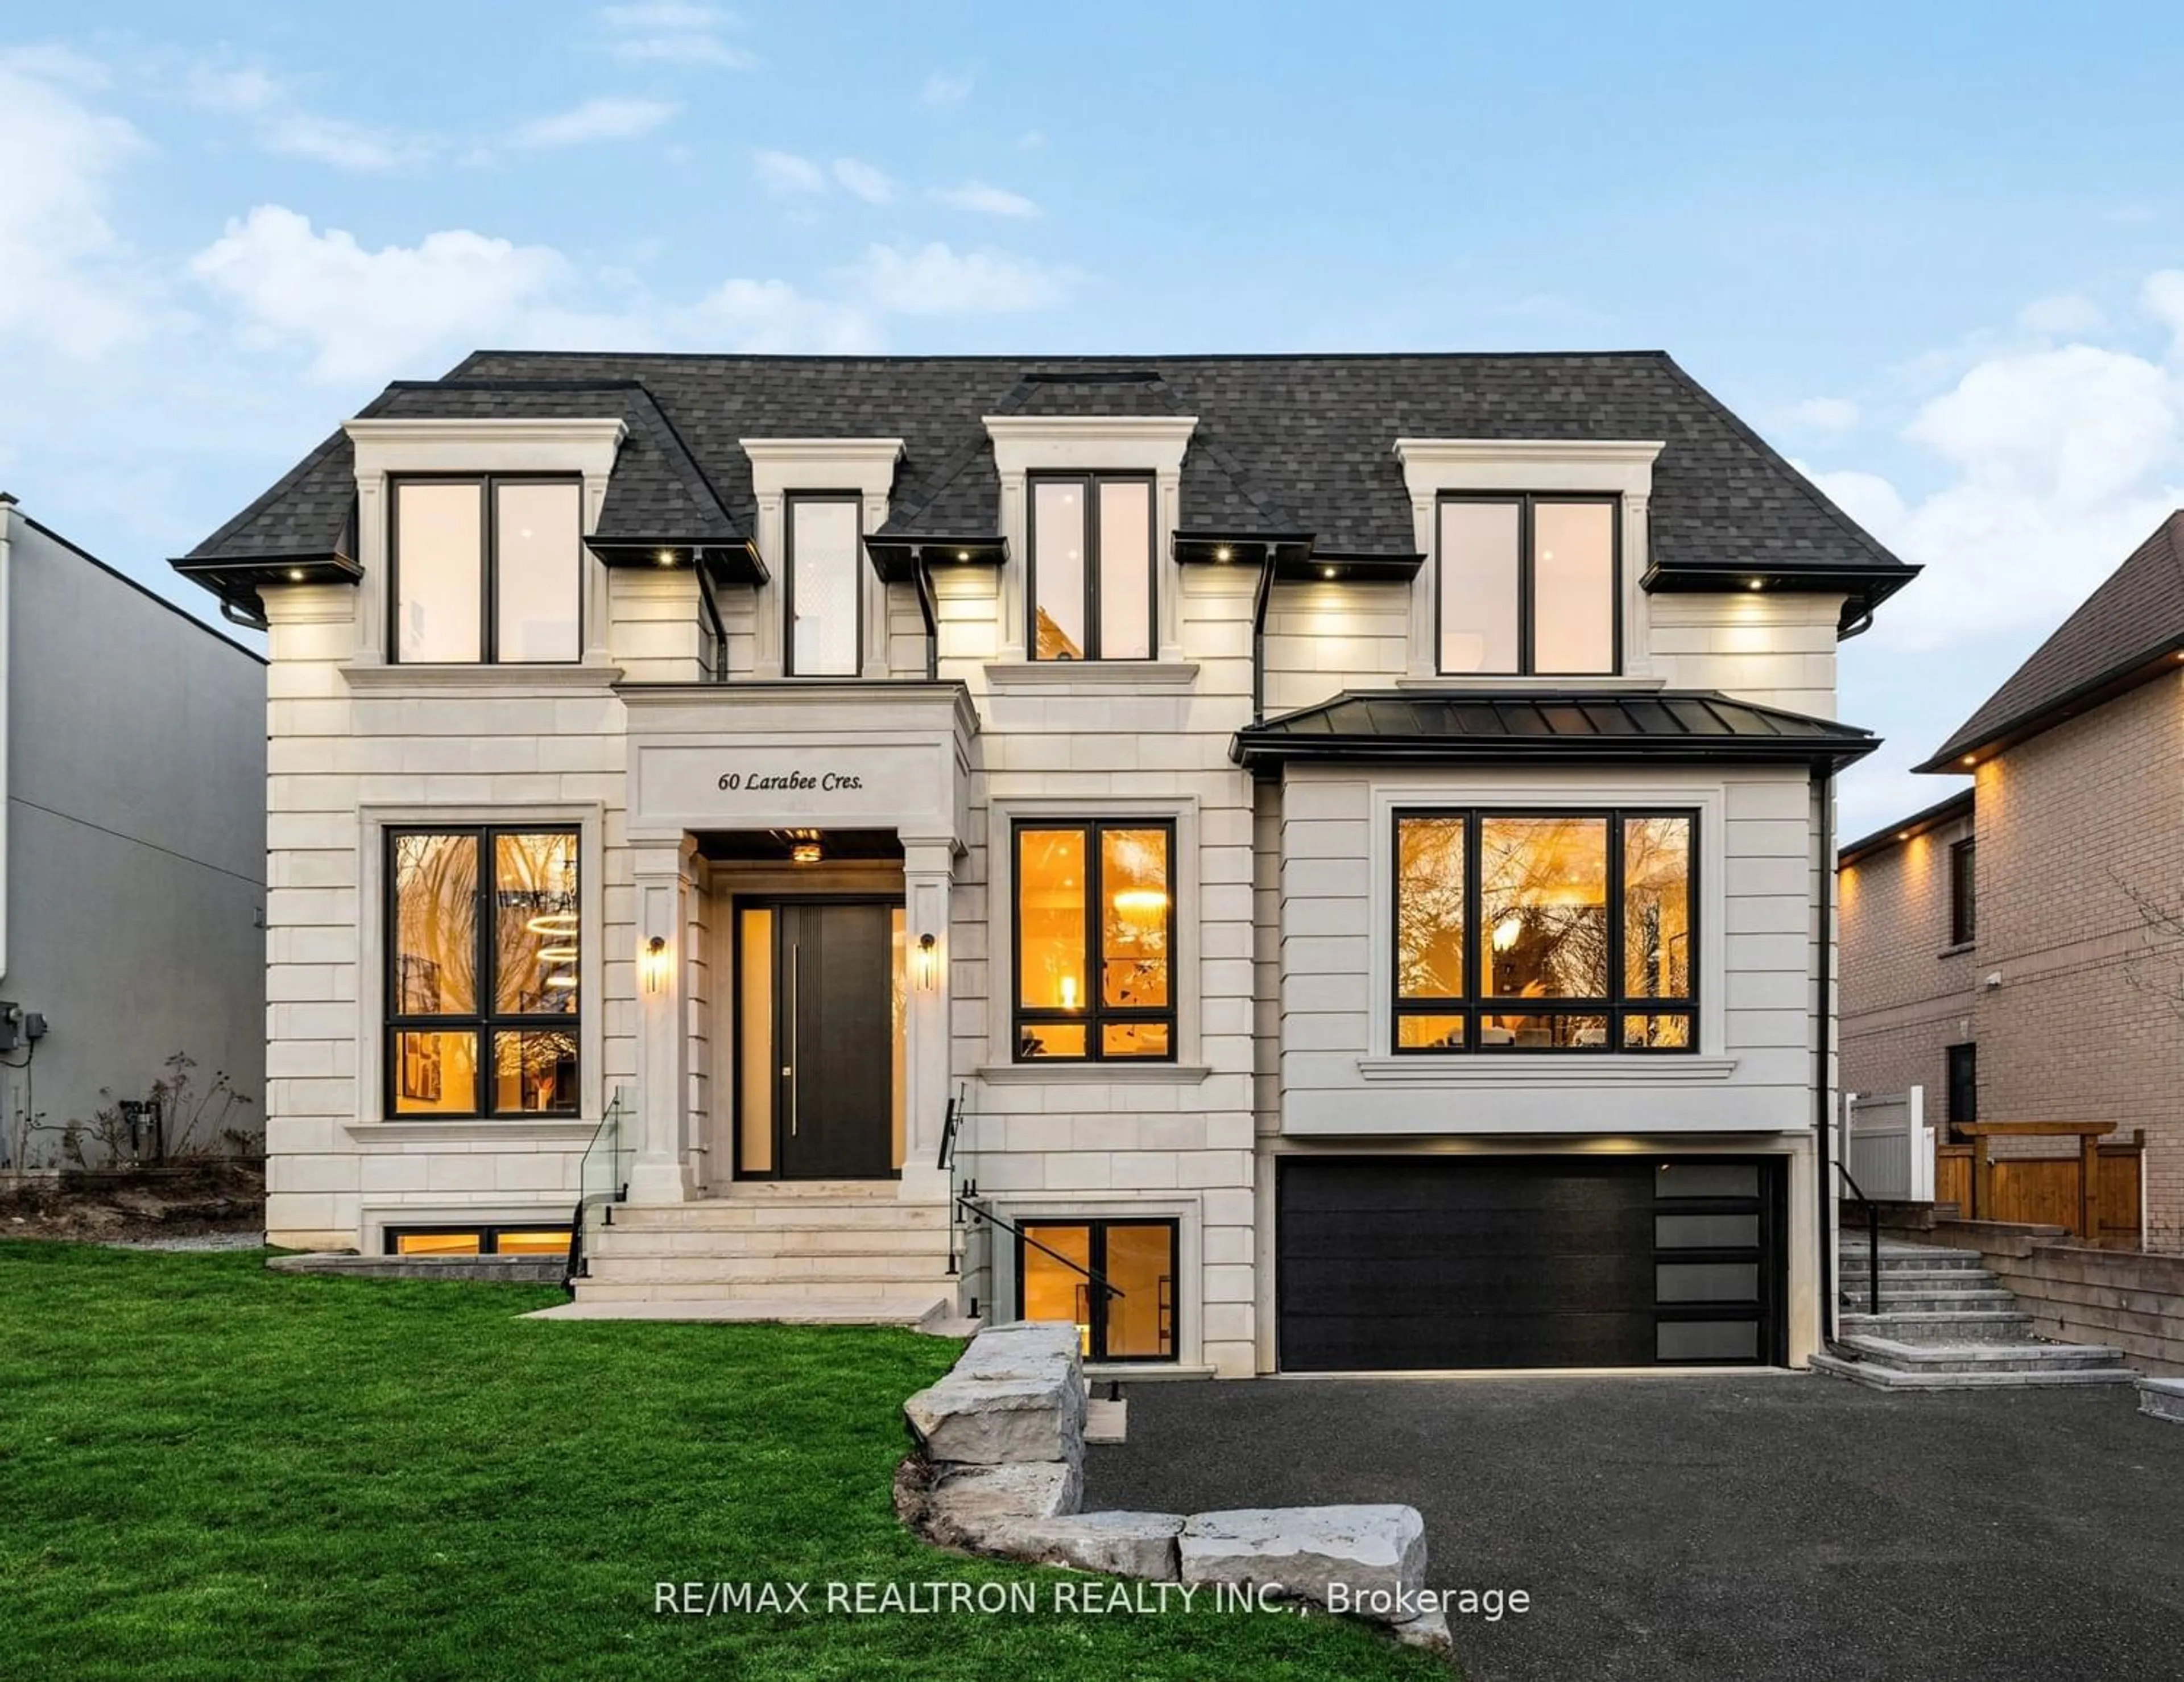 Home with brick exterior material for 60 Larabee Cres, Toronto Ontario M3A 3E7